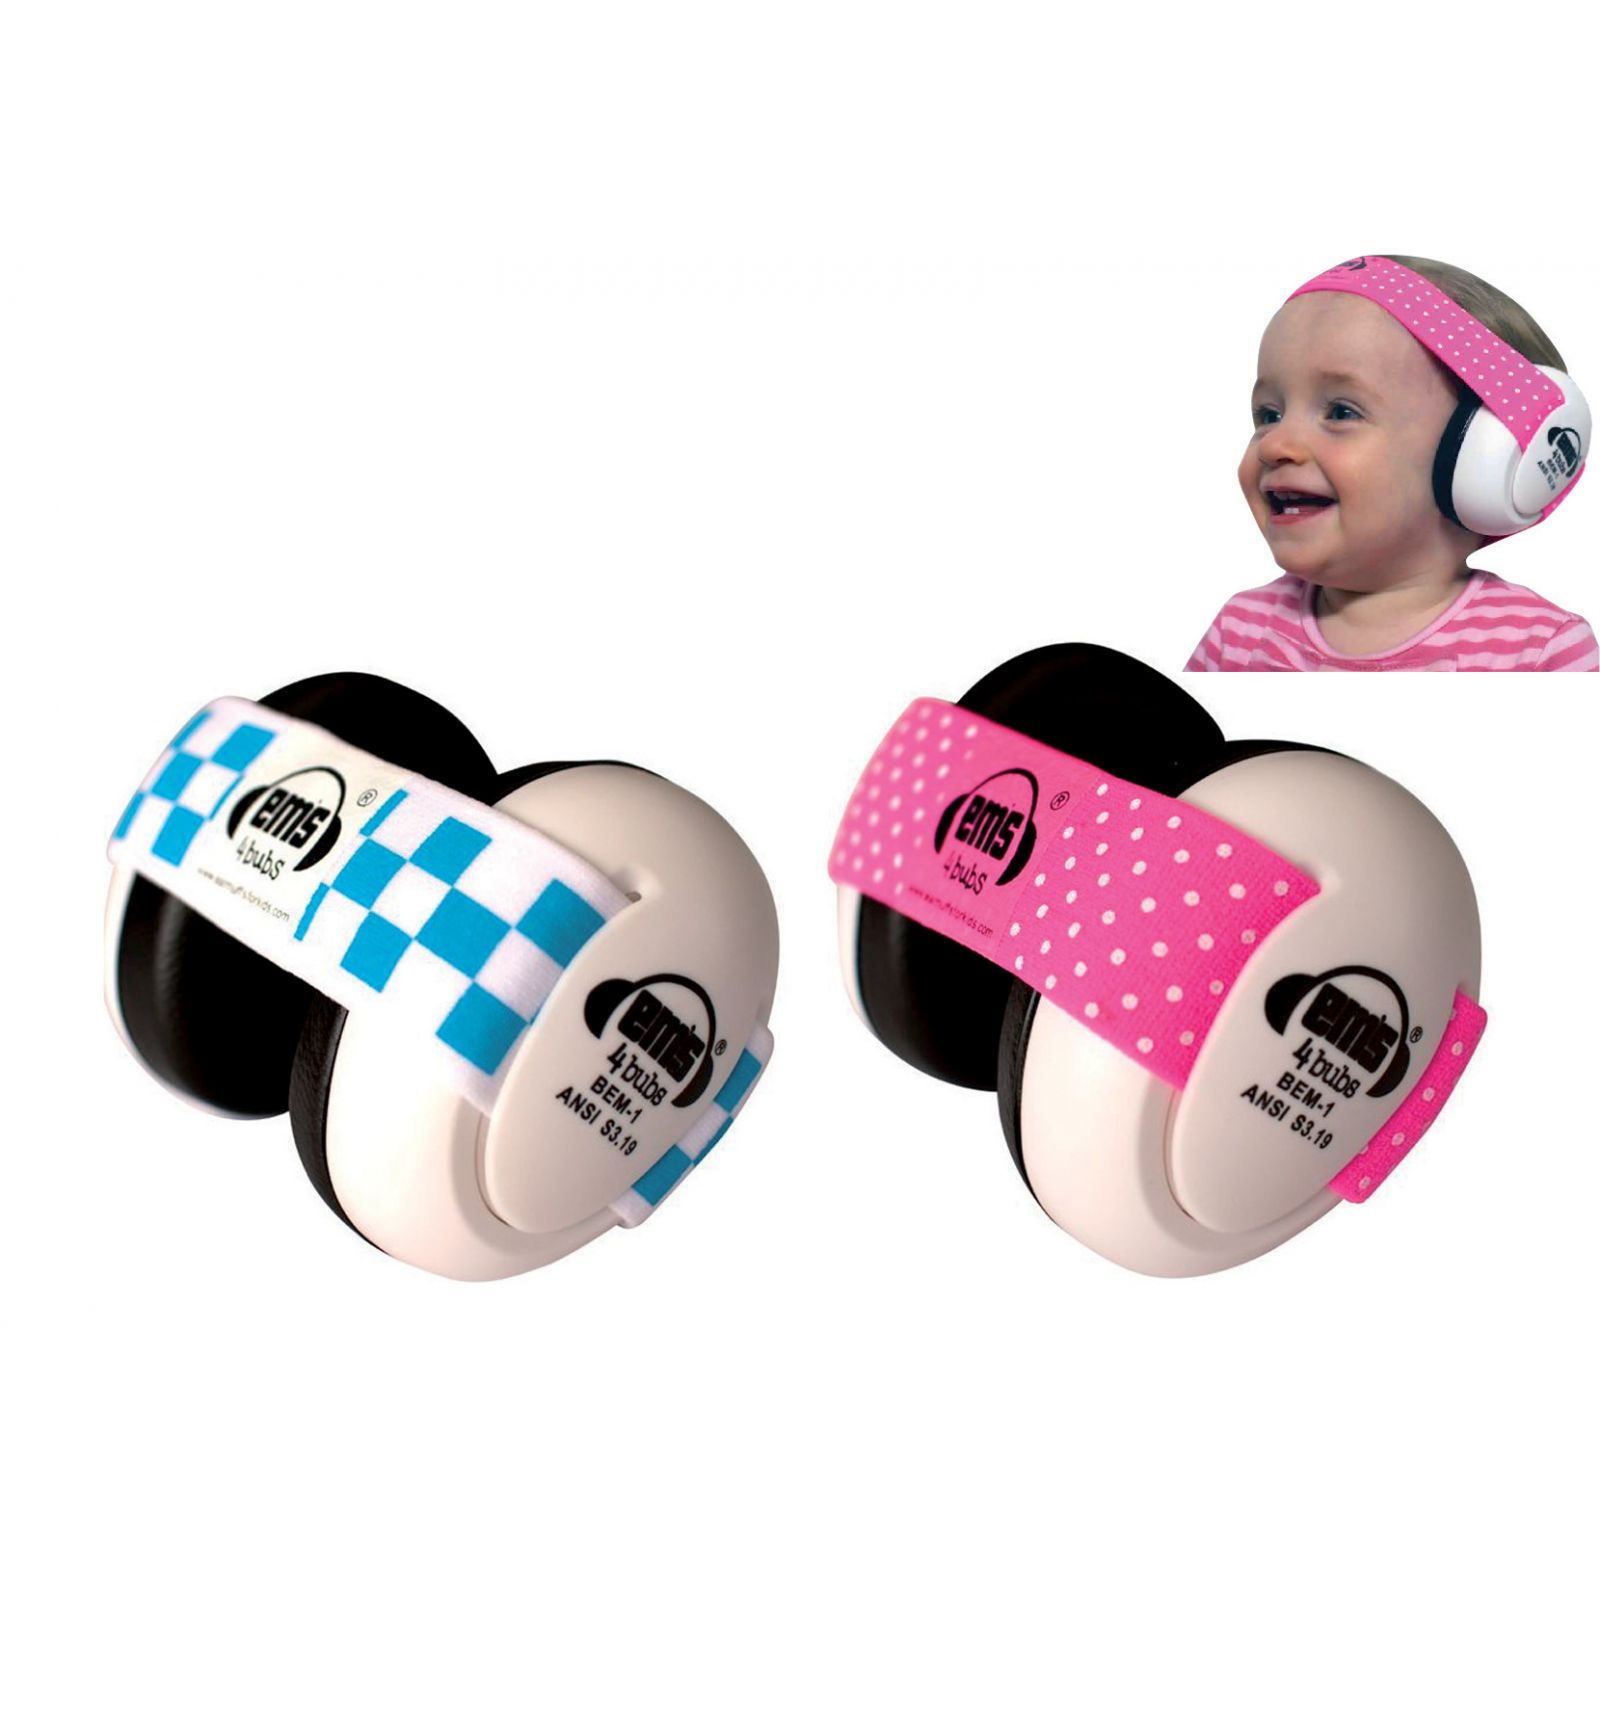 Casque anti bruit pour bébé - Ideal Audition - Ideal Audition